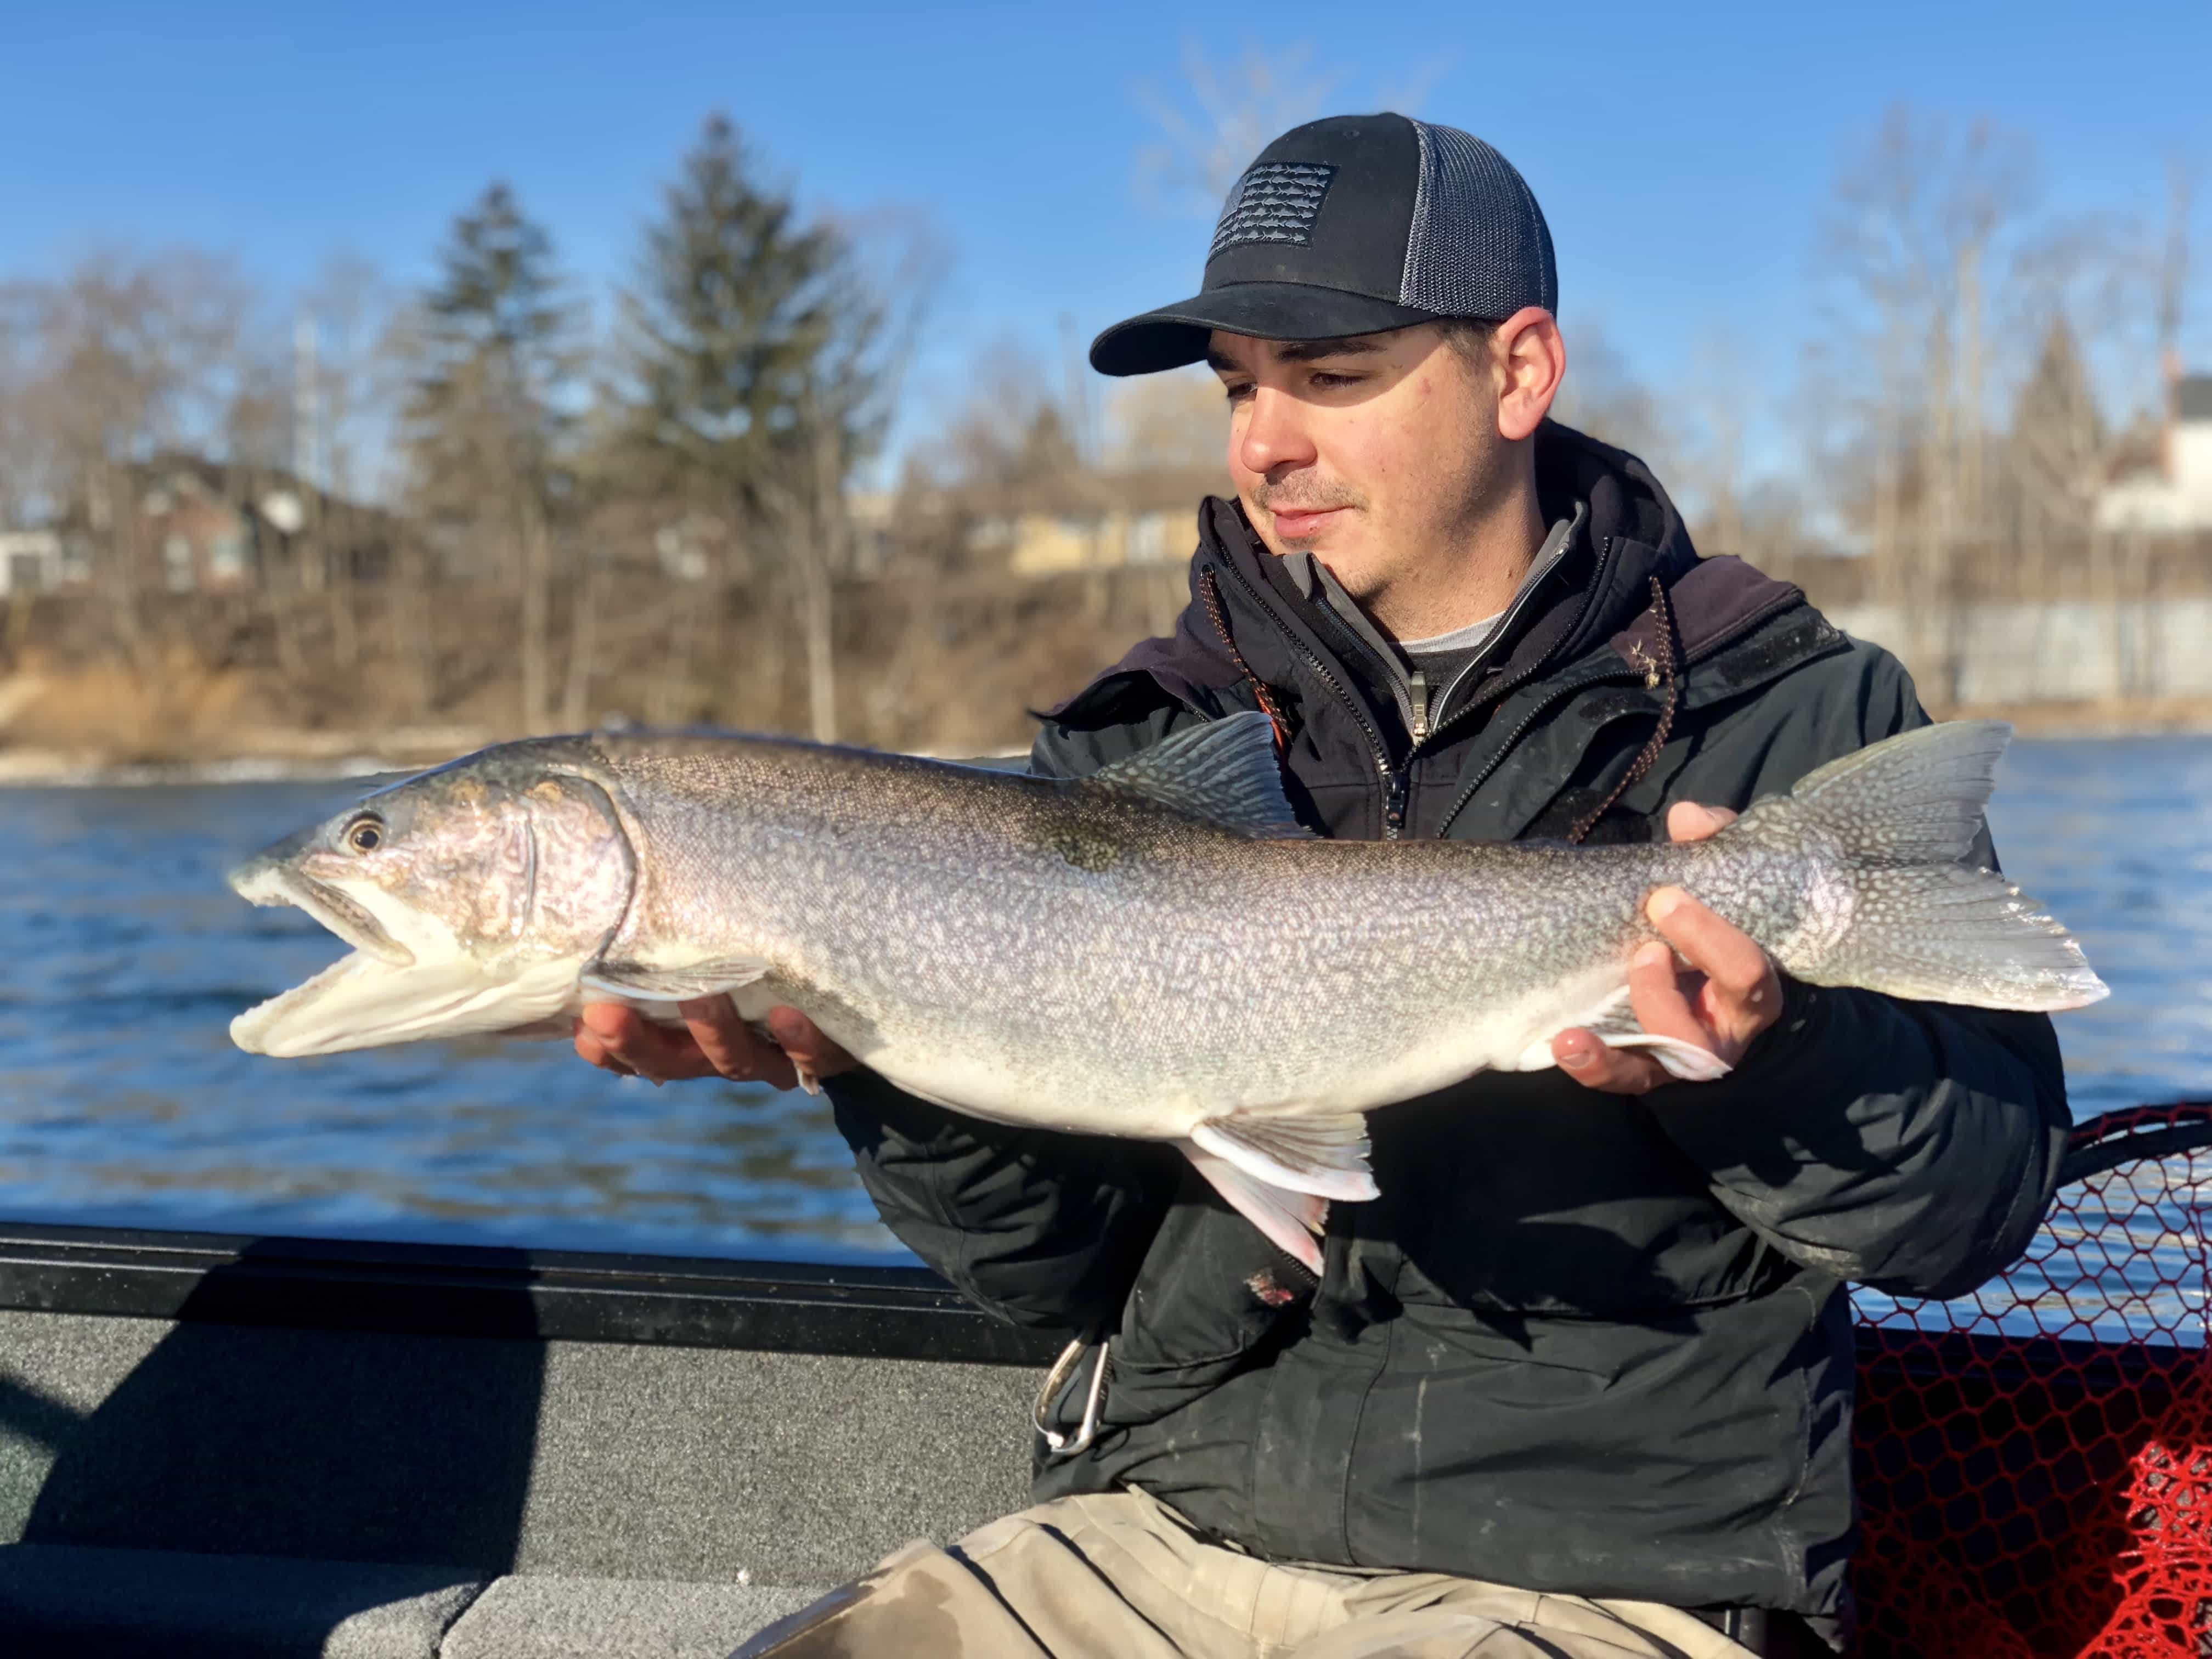 20180326 125414736 iOS - Winter Charter Fishing in Buffalo Niagara